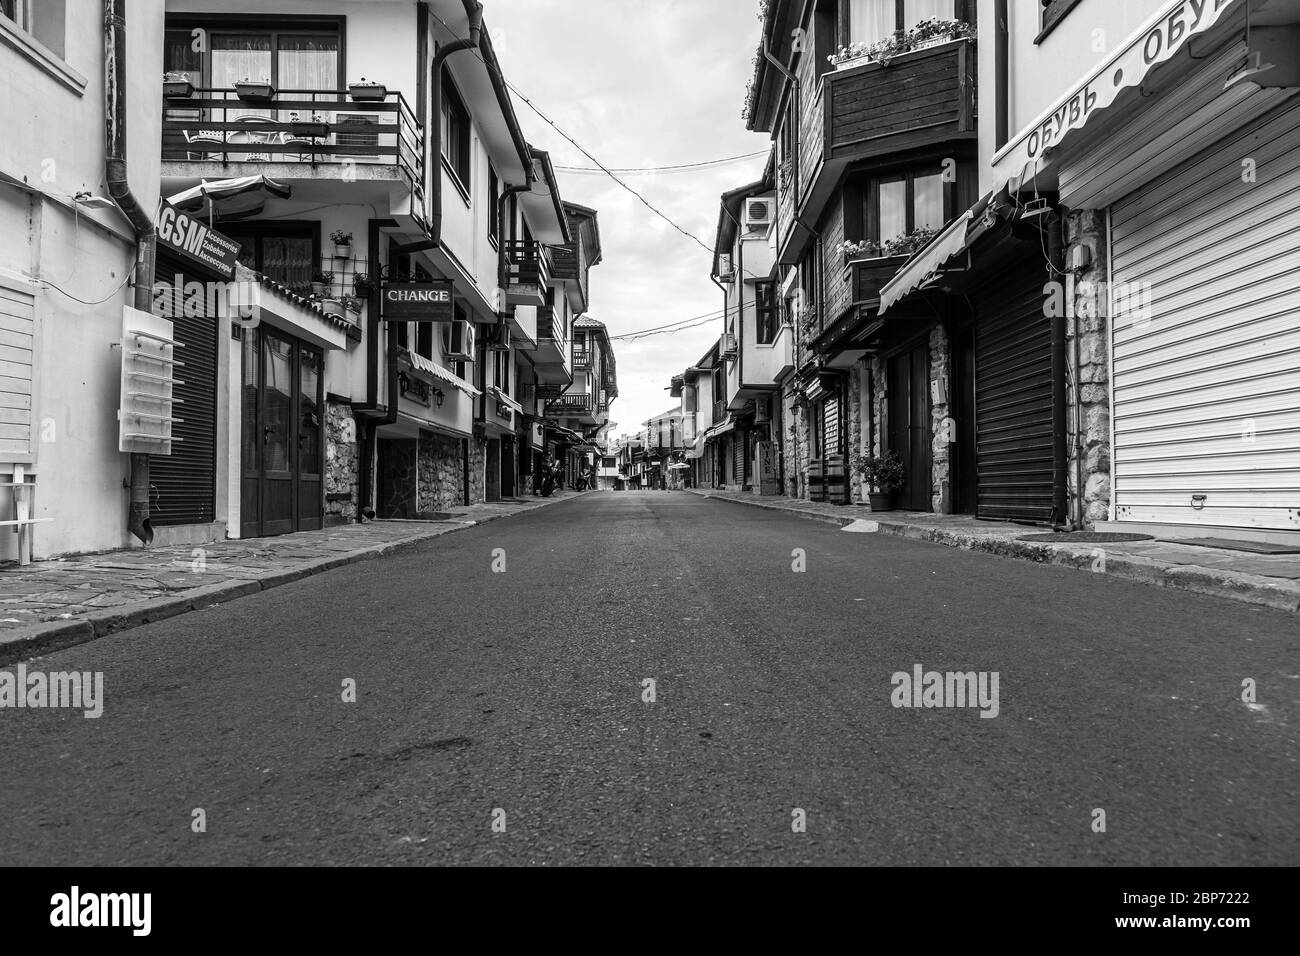 NESSEBAR, BULGARIA - 22 GIUGNO 2019: Bella e stretta strada con ristoranti, caffè e negozi dell'antica città di mare. Strade deserte al mattino presto. Bianco e nero. Foto Stock